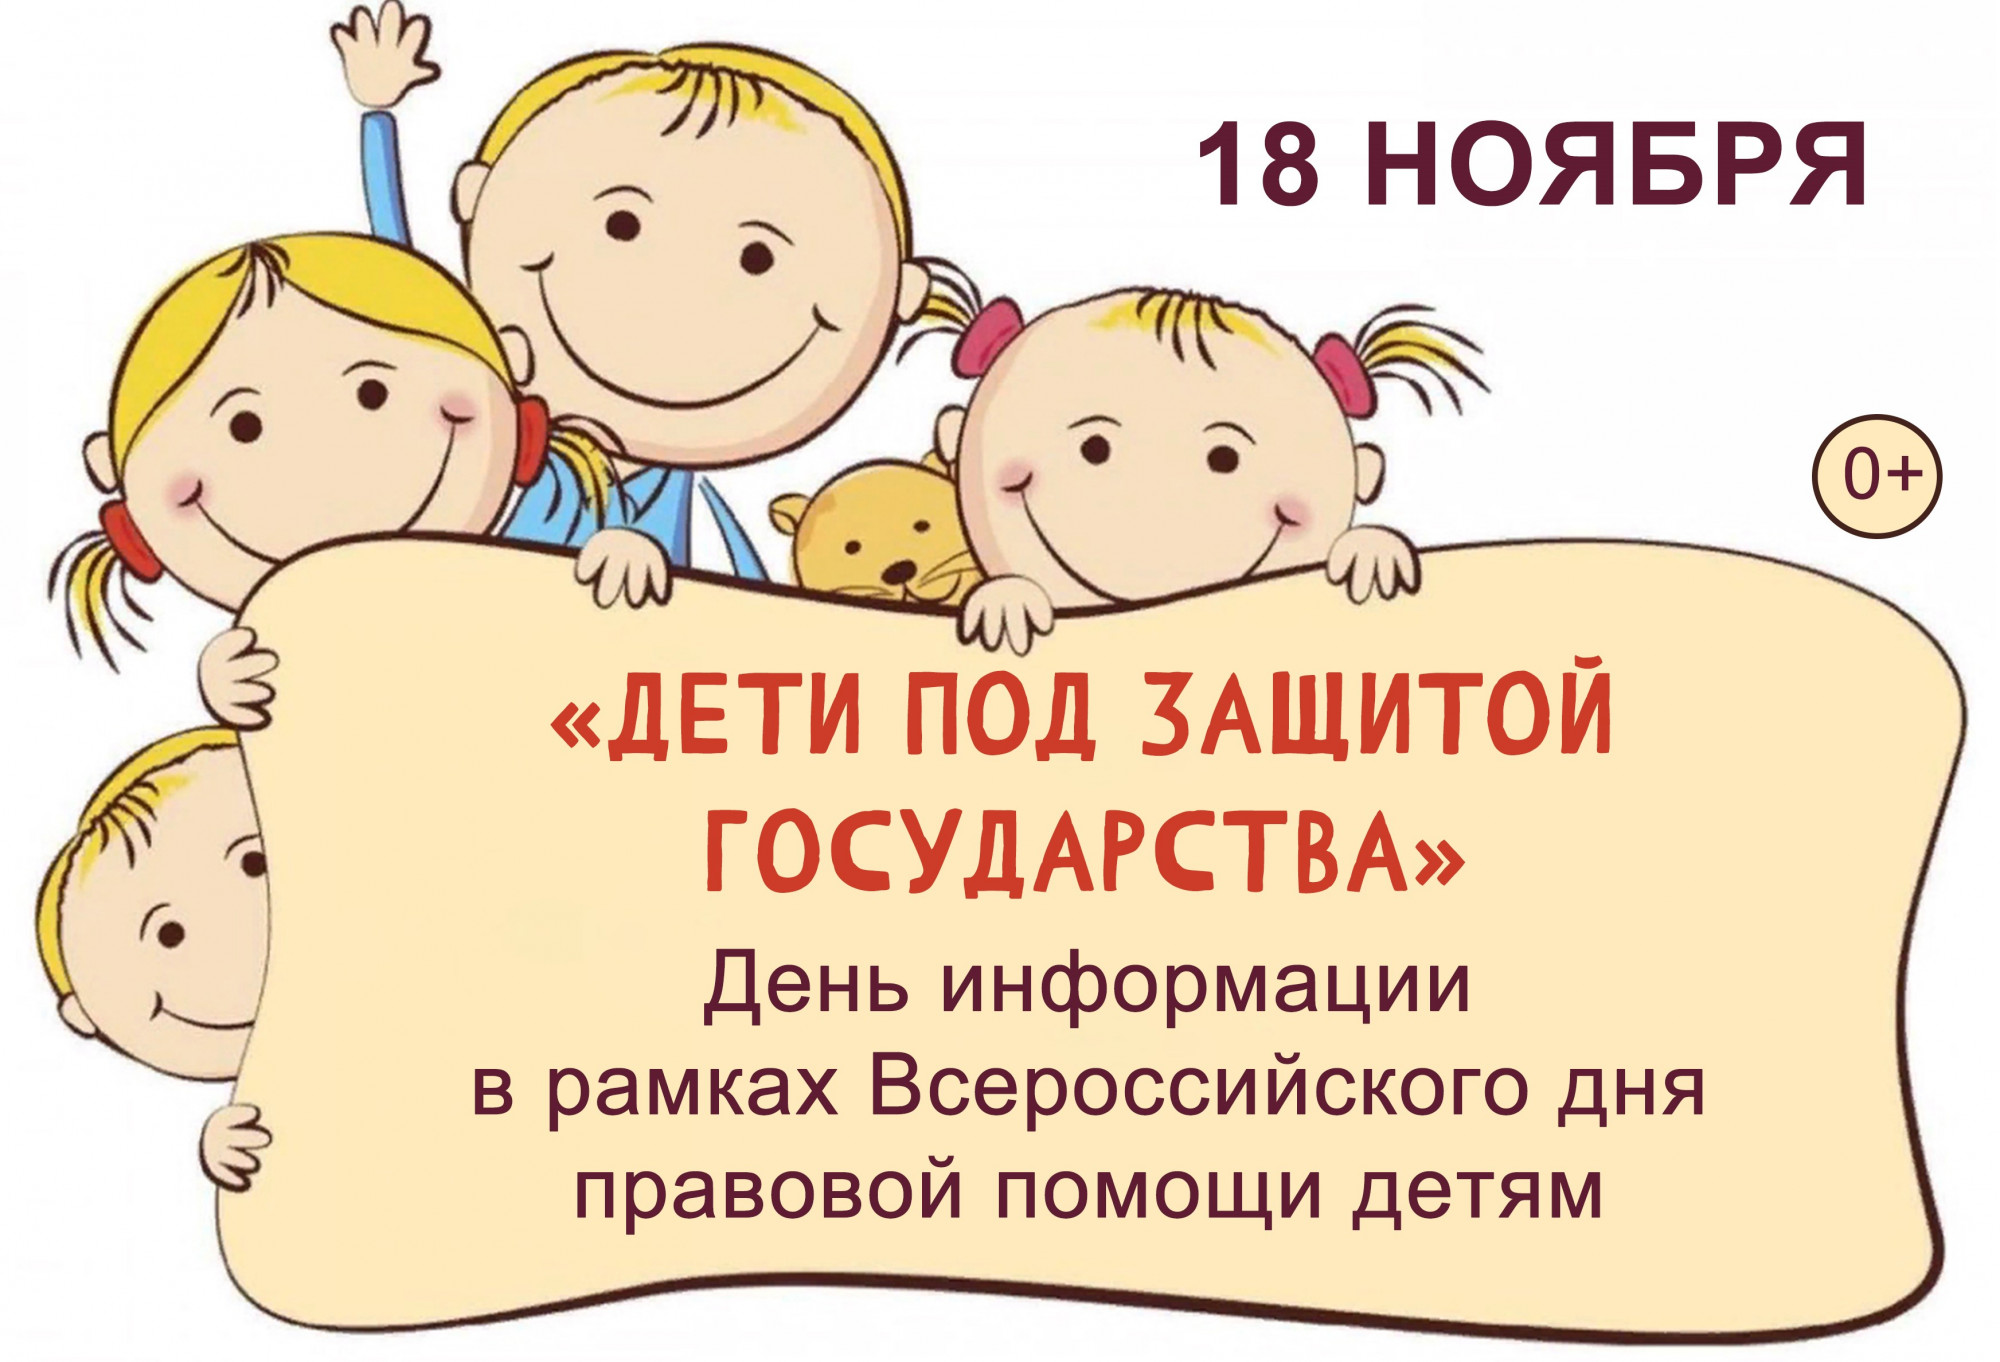 международный день ребенка 20 ноября картинки